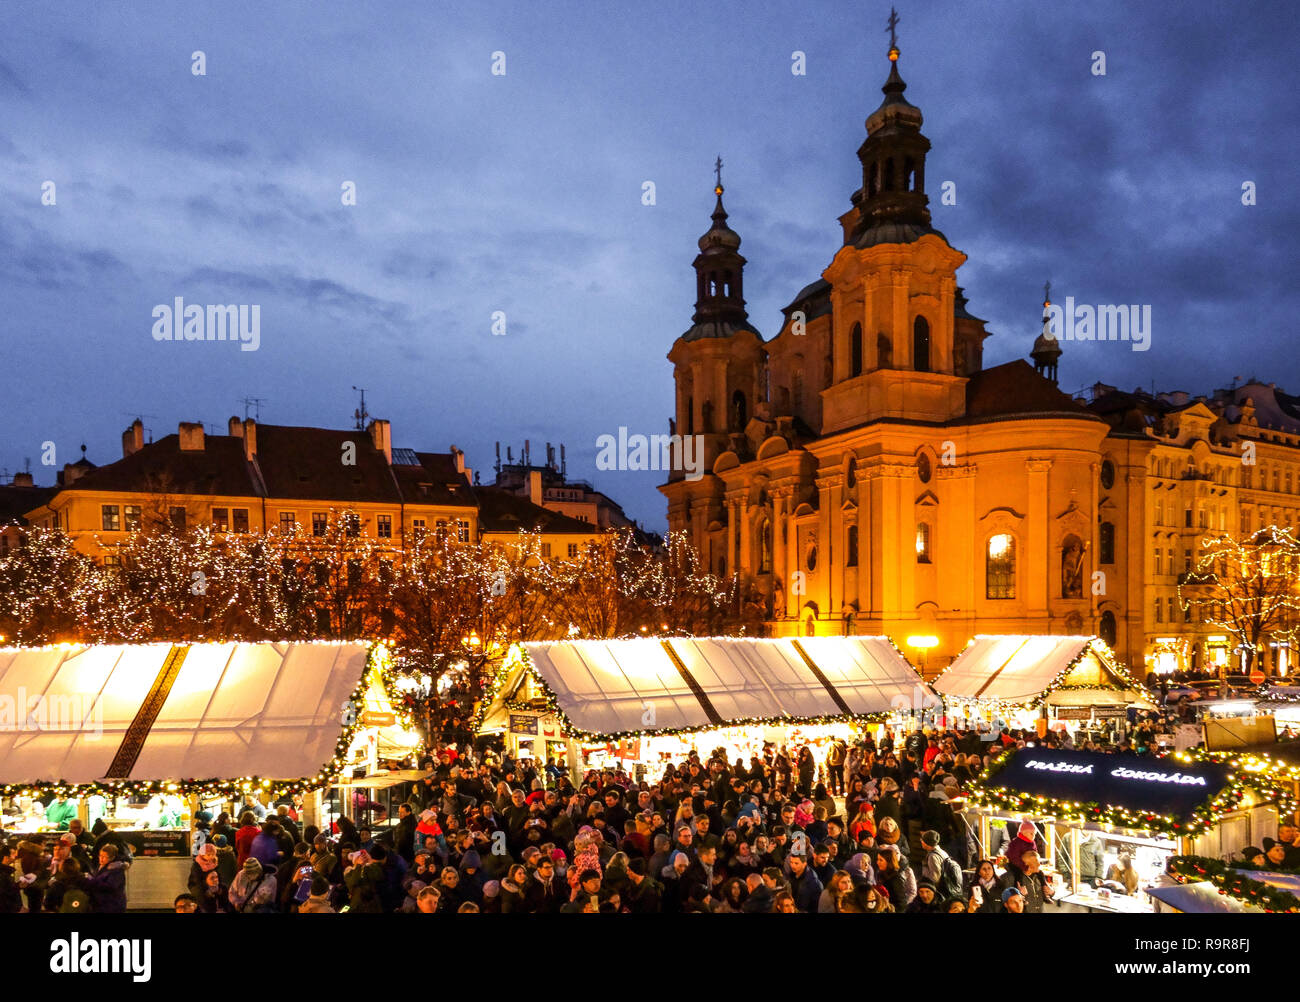 Europäische Hauptstadt, Prager Weihnachtsmarkt Altstädter Ring, Tschechische Republik Europa Weihnachten Stockfoto